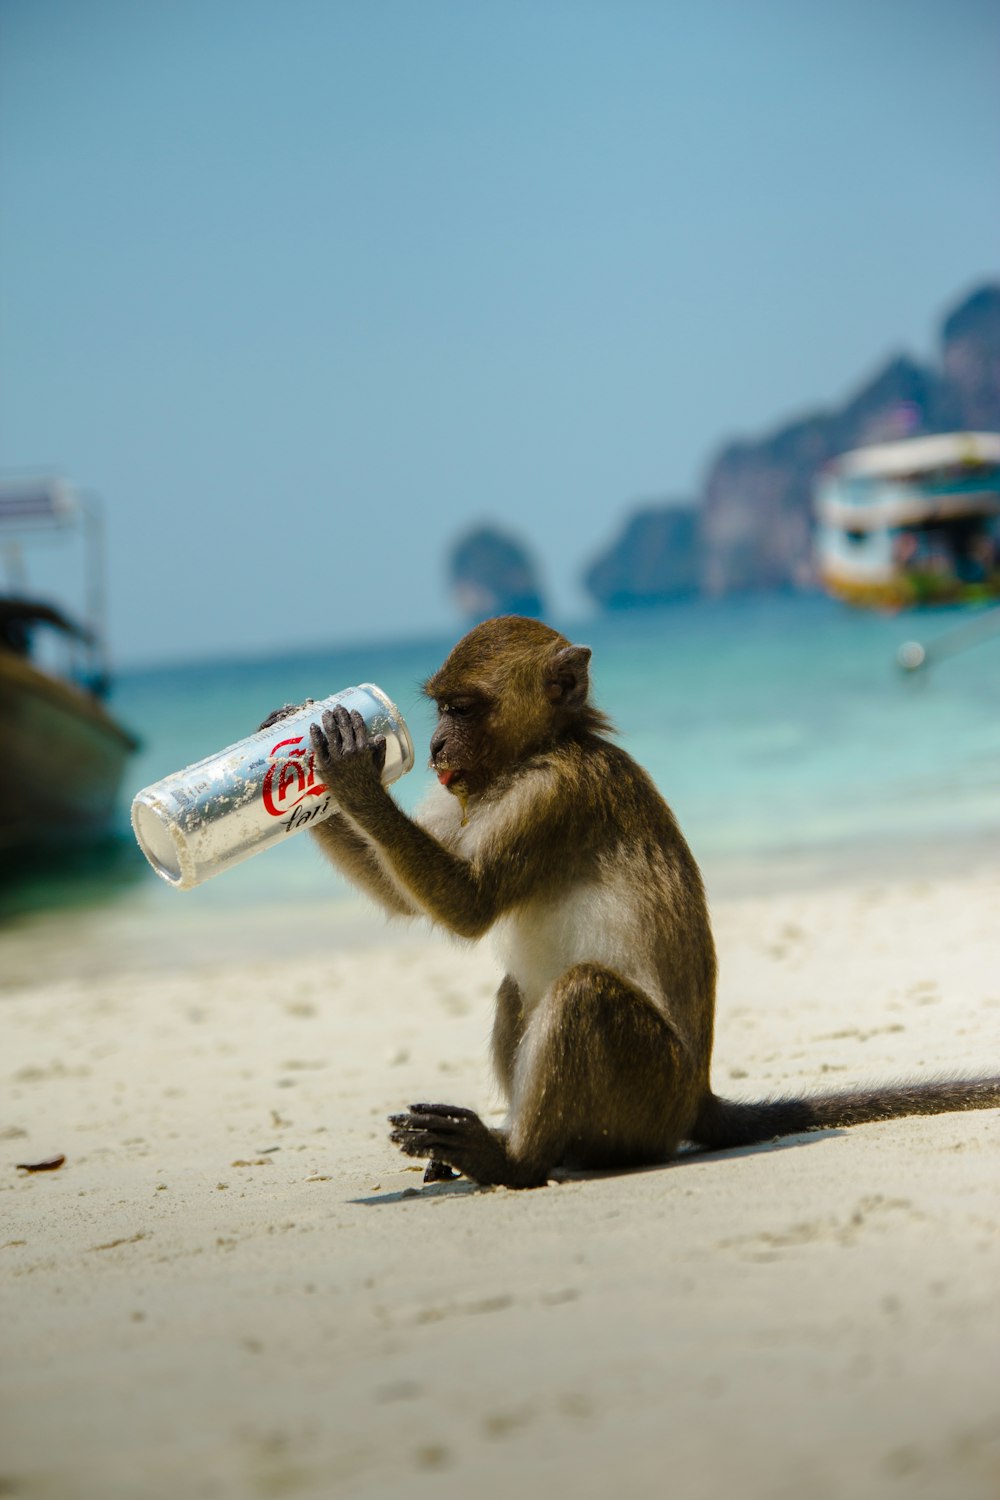 brauner Primat mit Coca-Cola-Dose